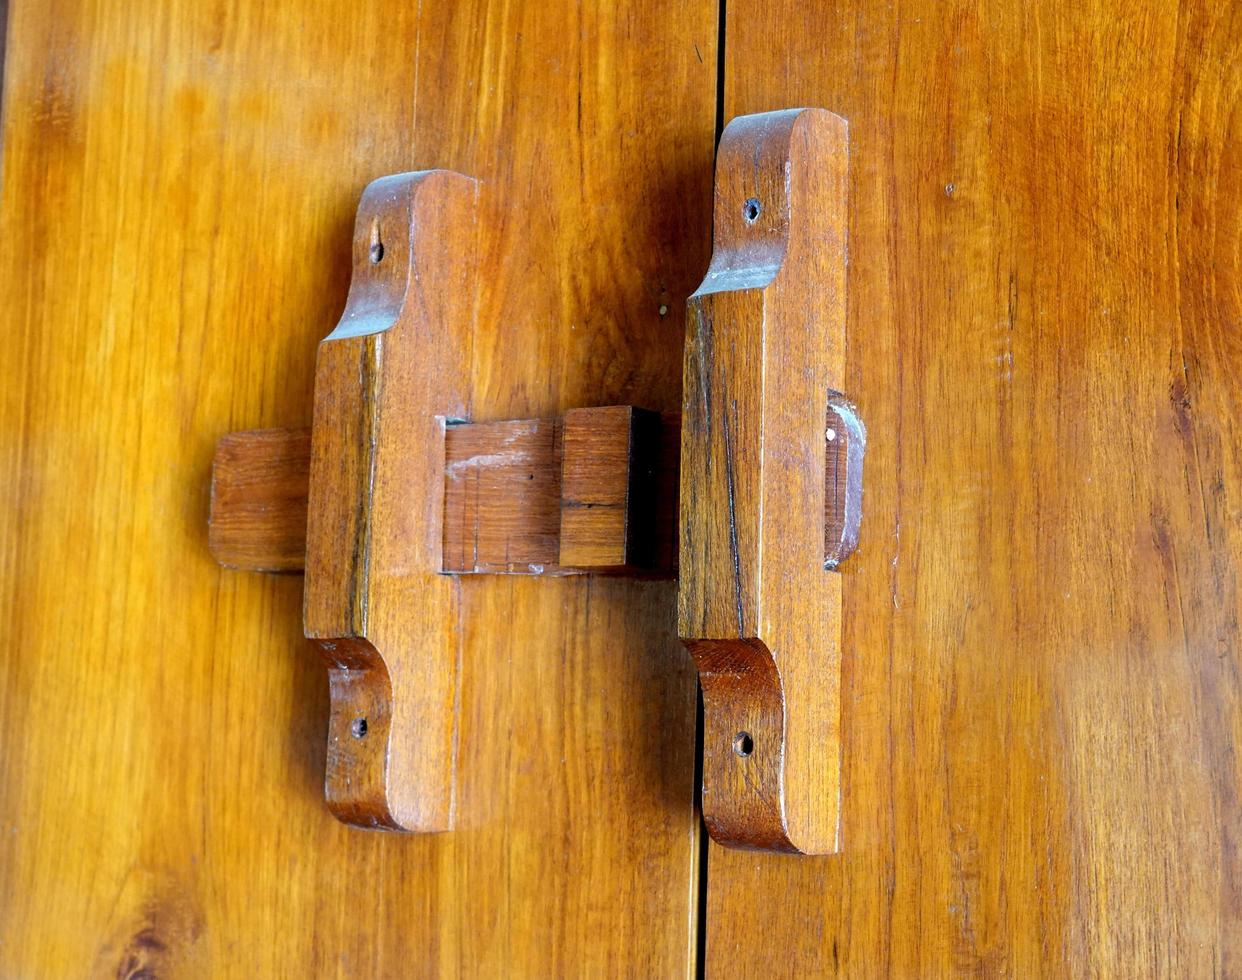 handmade wooden lock or ancient door latch.  Thailand traditional wood door photo